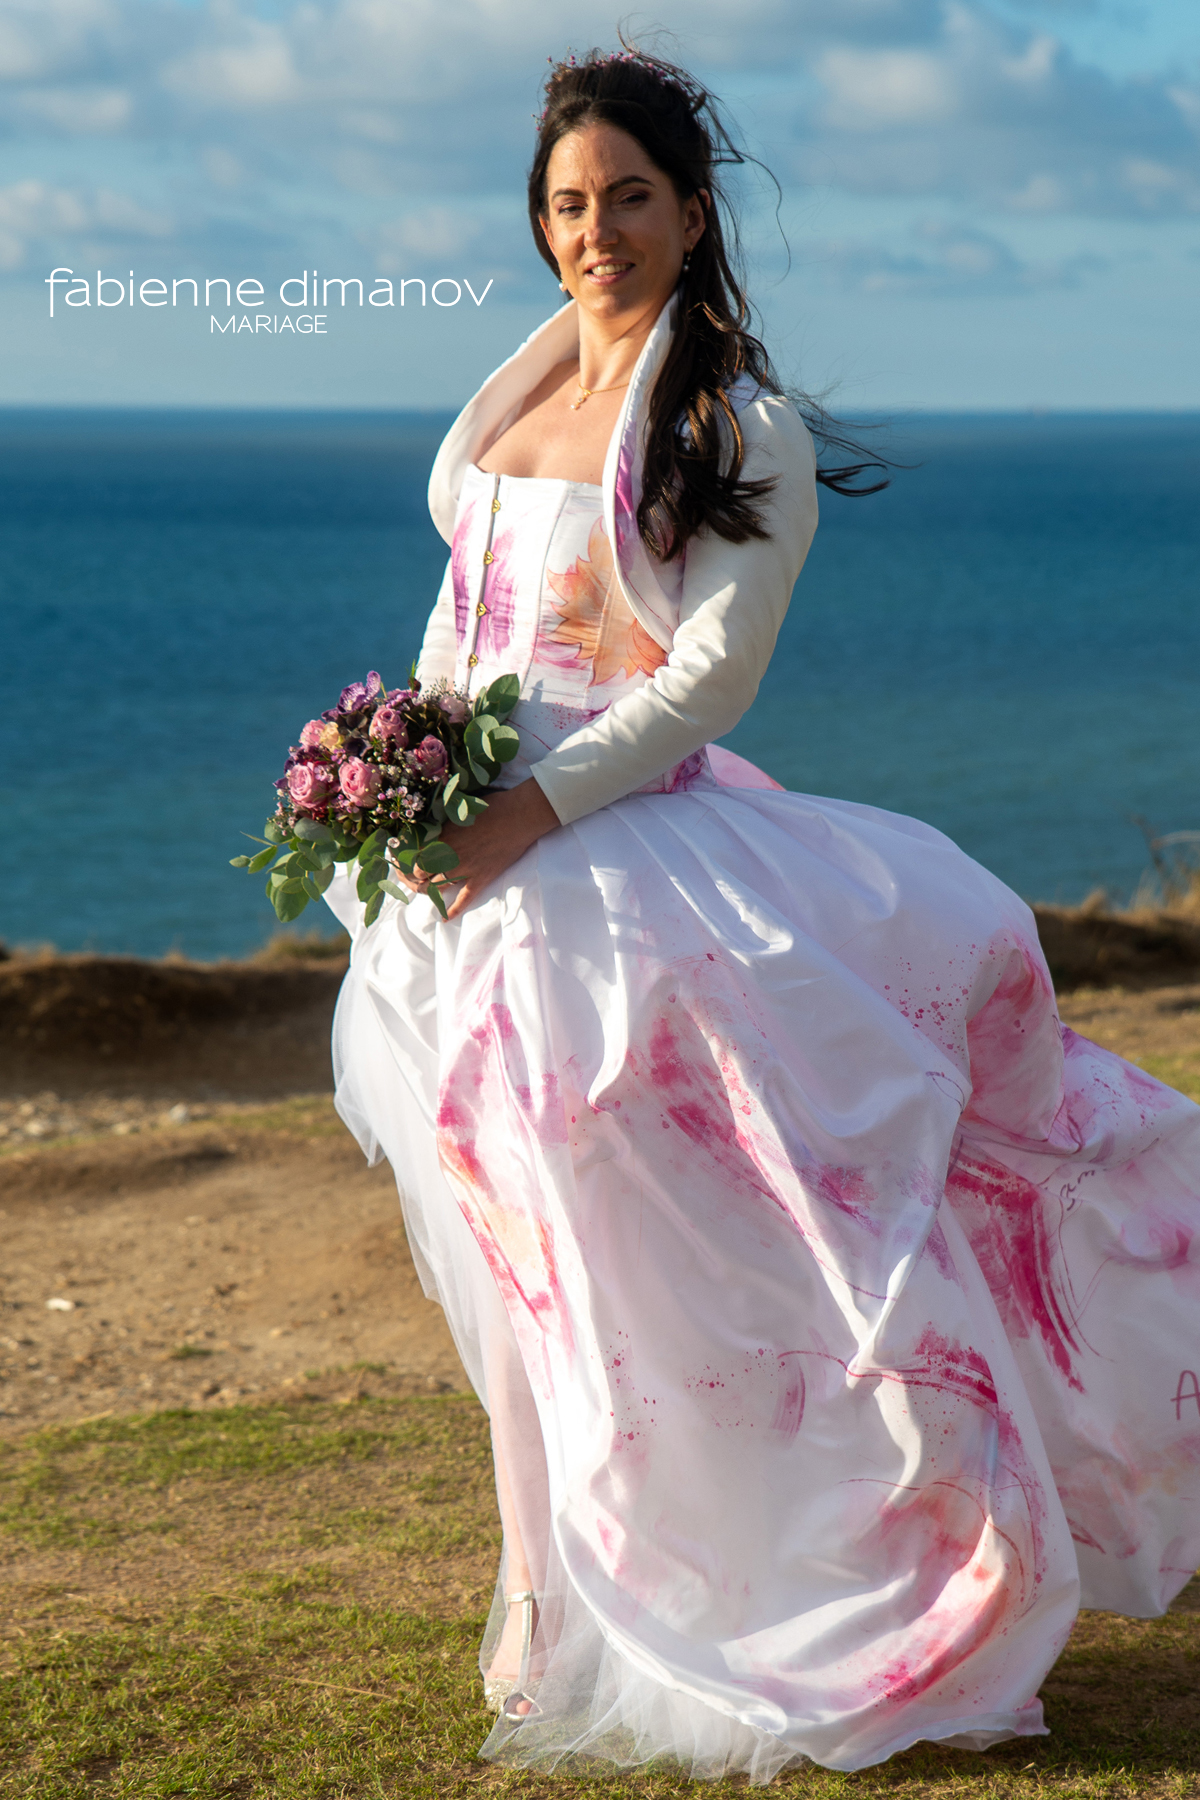 Mariée rose camaieu - Fabienne Dimanov Mariage